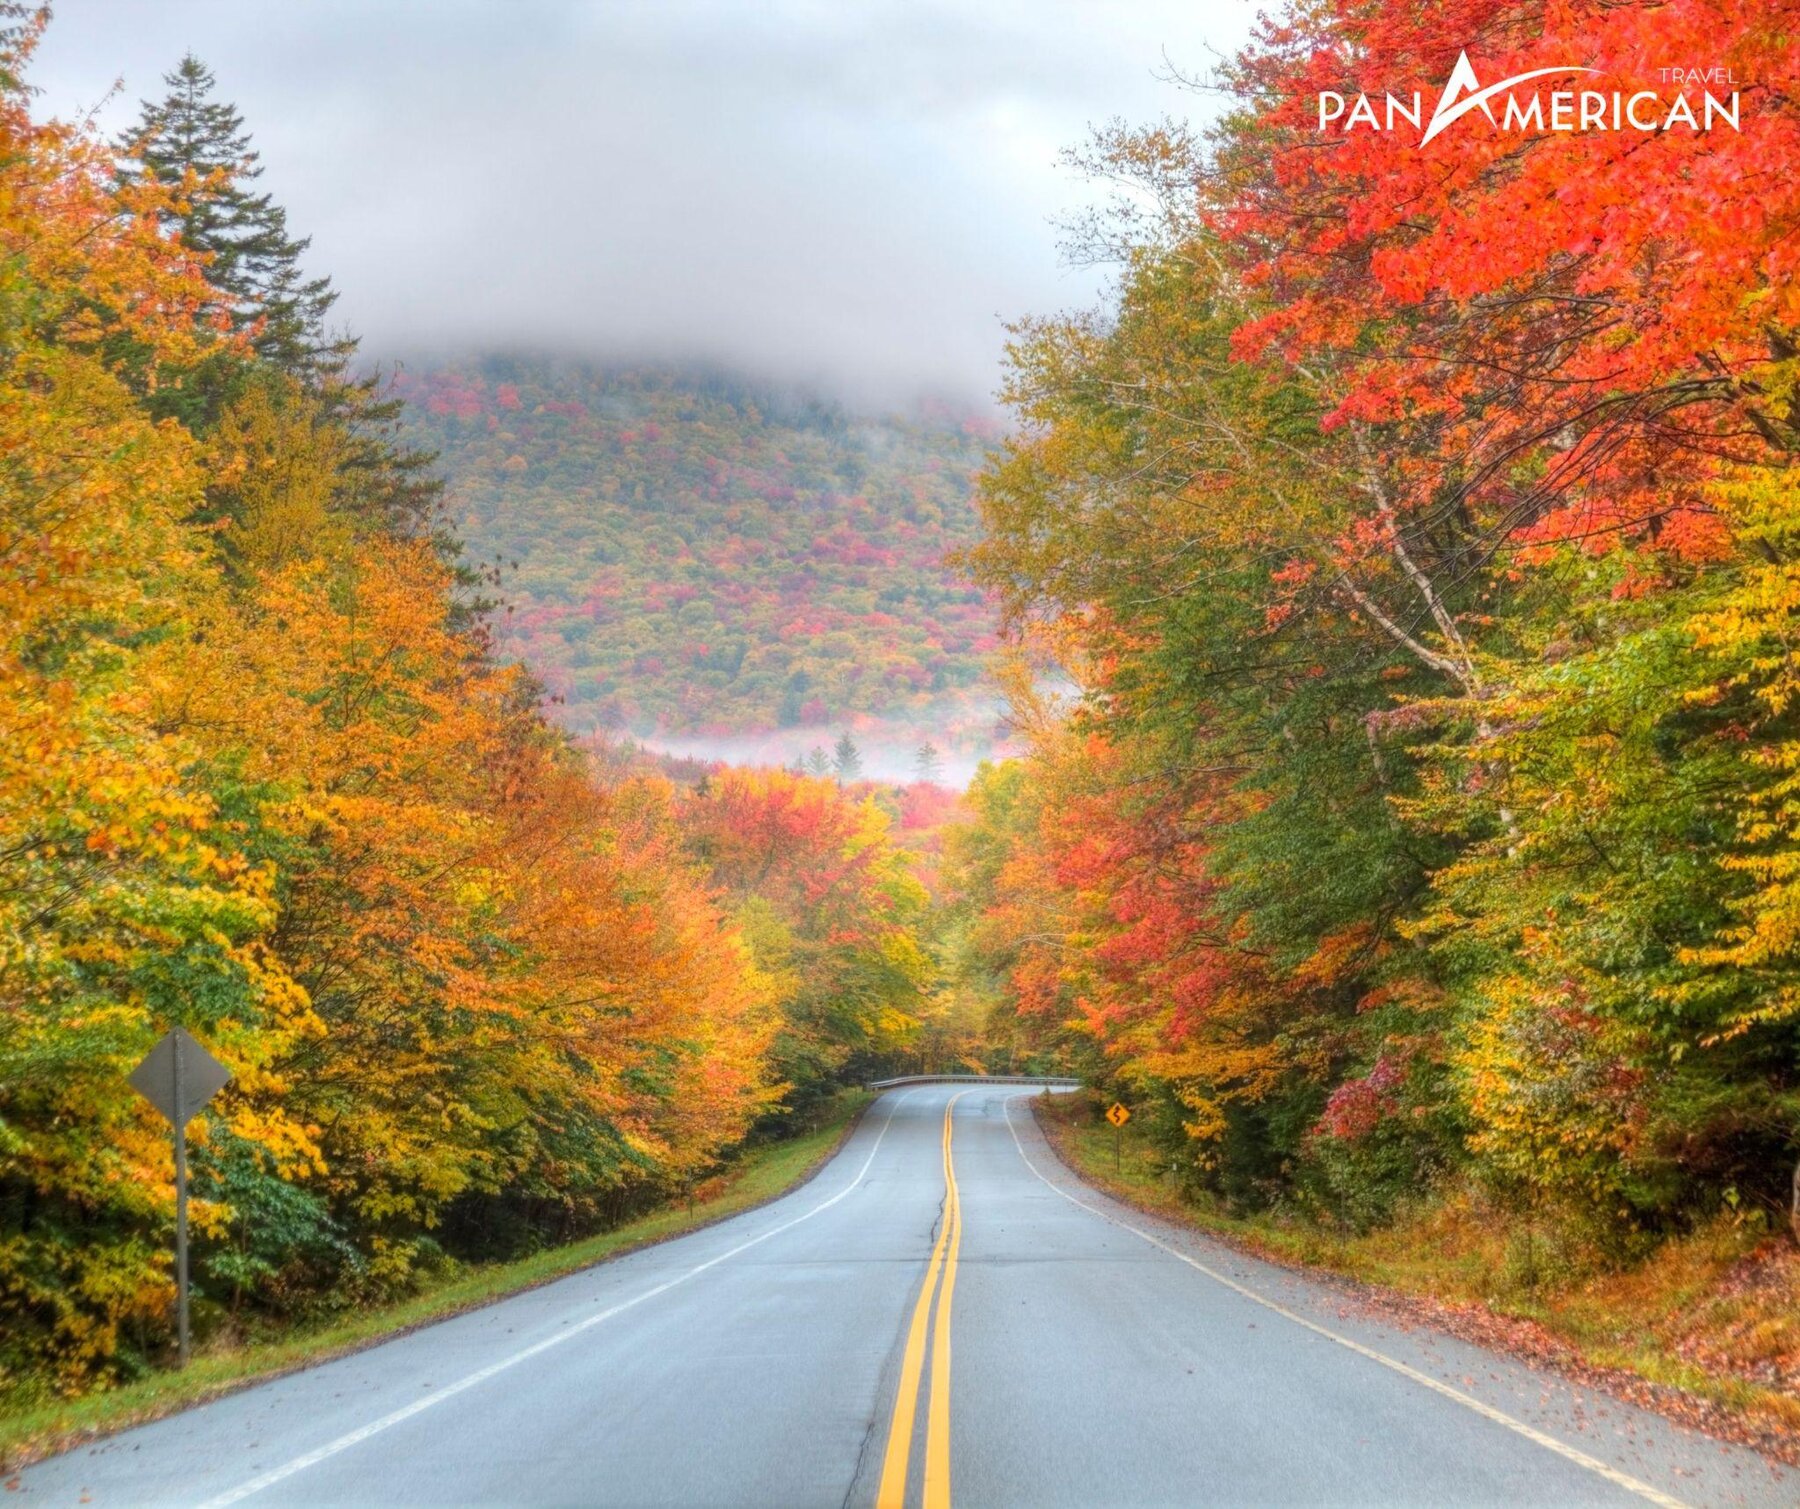 Cung đường mùa thu được mệnh danh đẹp nhất Bắc Mỹ